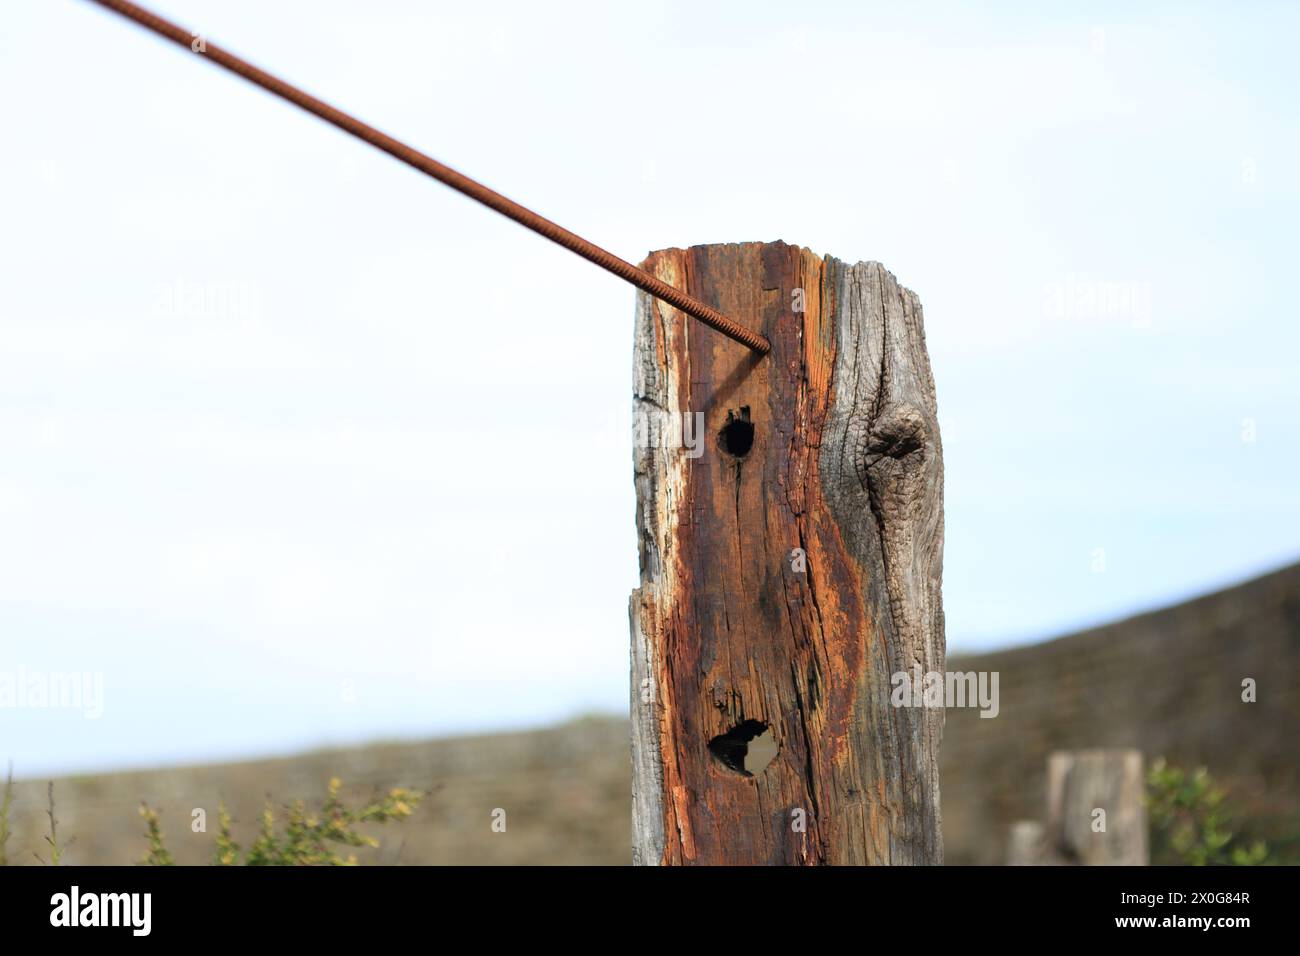 Poteau en bois vieilli supportant des barres d'armature métalliques formant clôture Banque D'Images